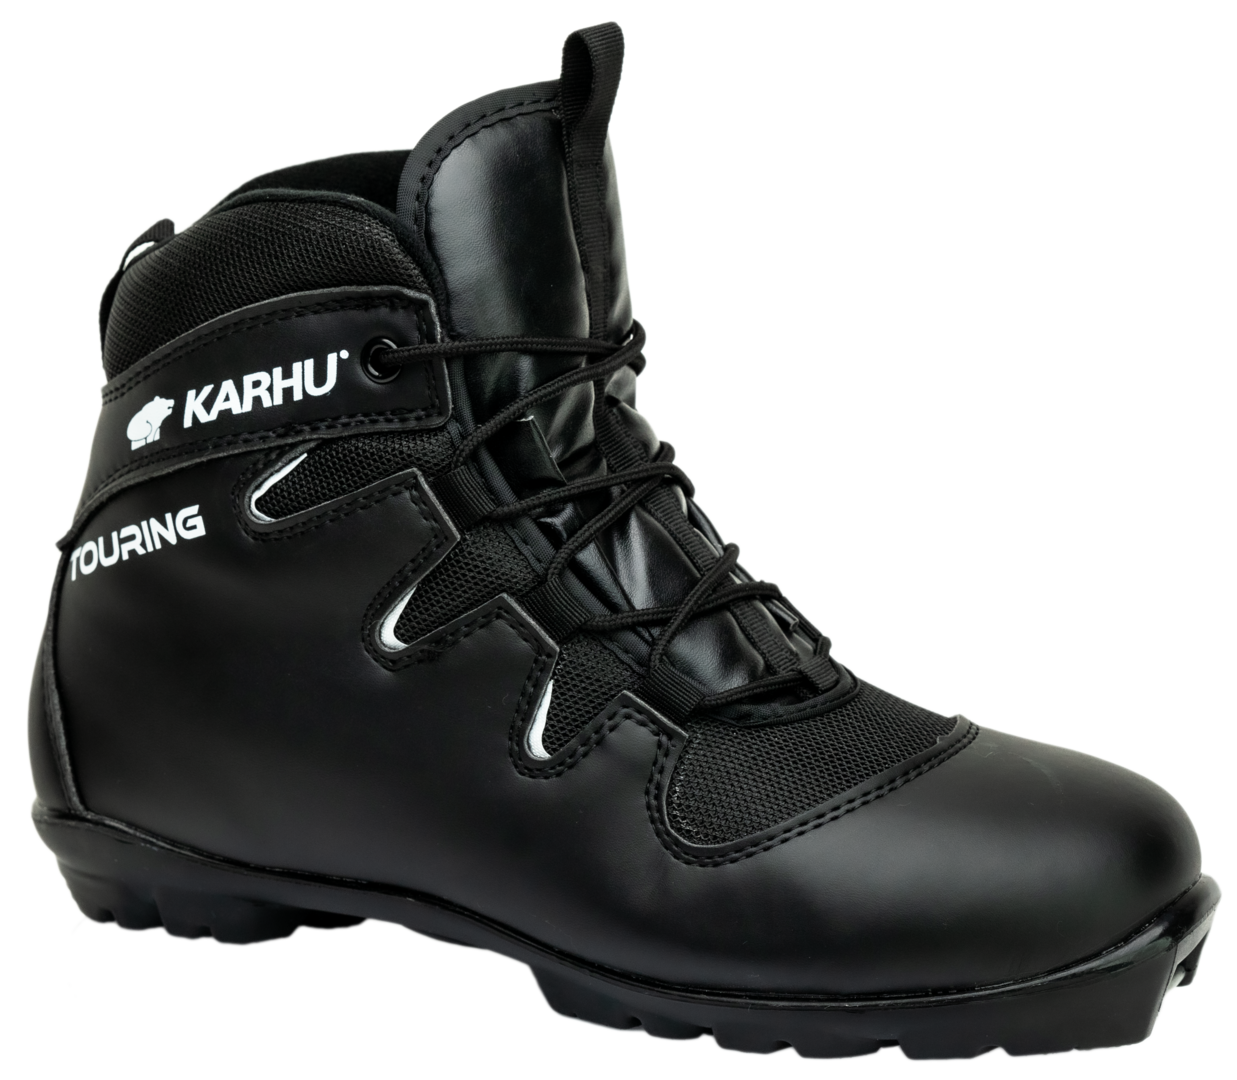 Karhu Touring SR Classic ski boots (35-47)